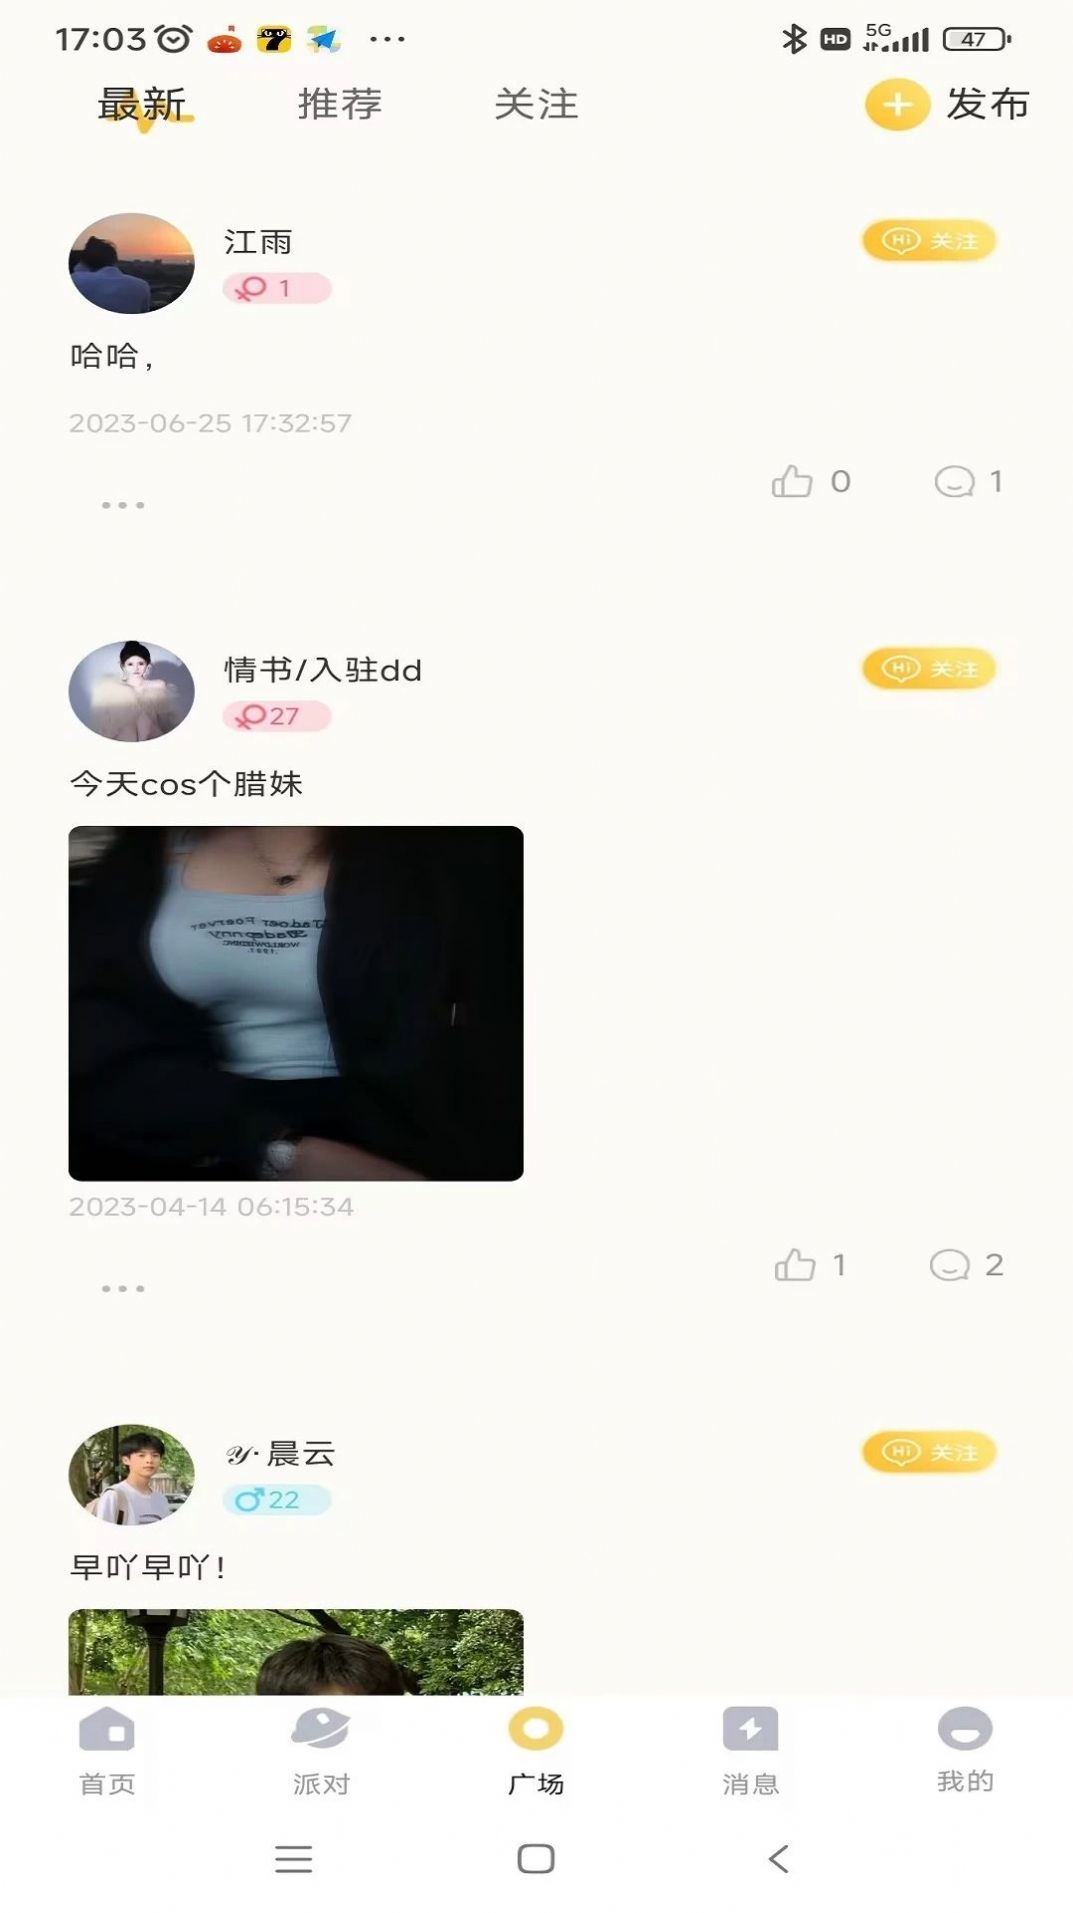 雷神语音社交app官方下载